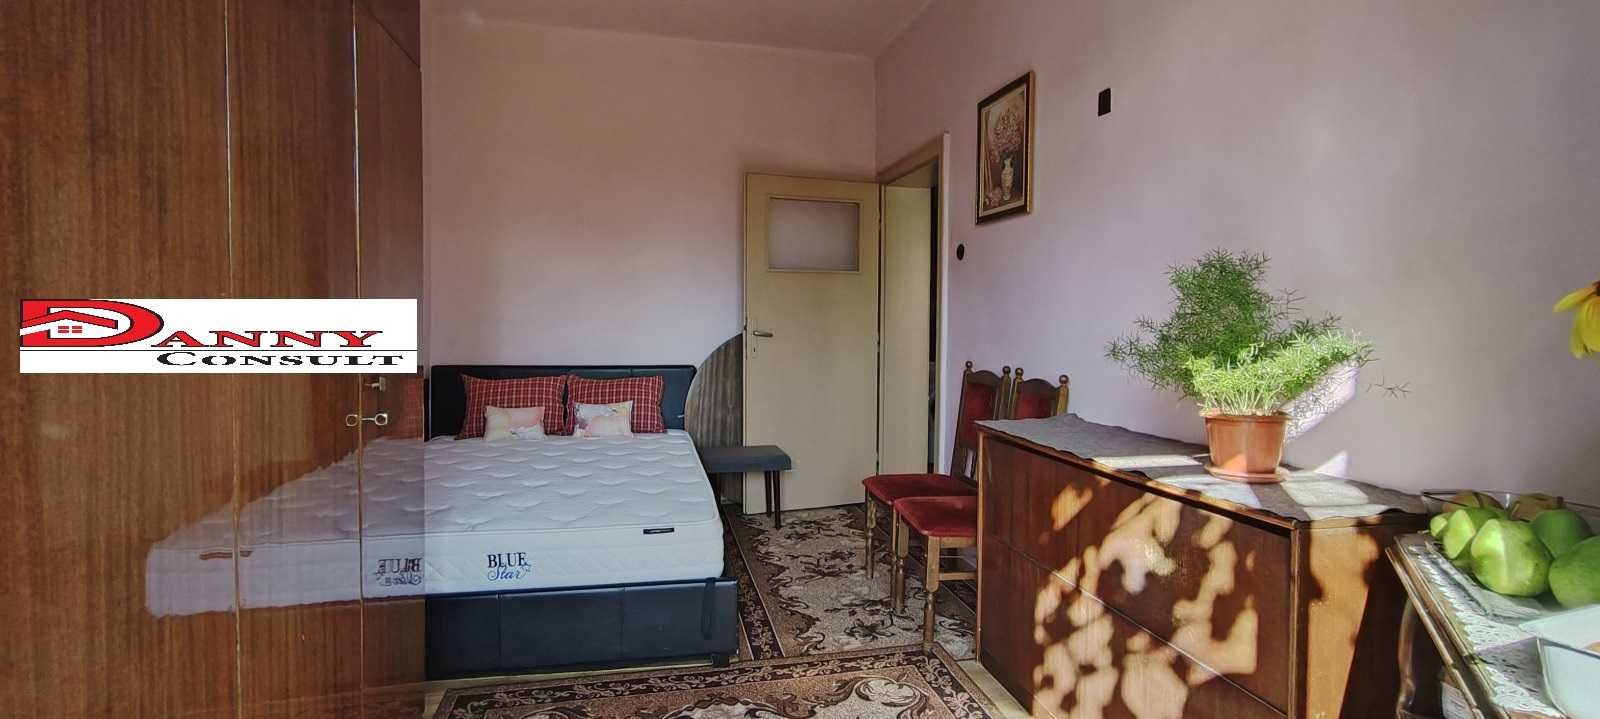 Двустаен апартамент в центъра на гр. Велико Търново